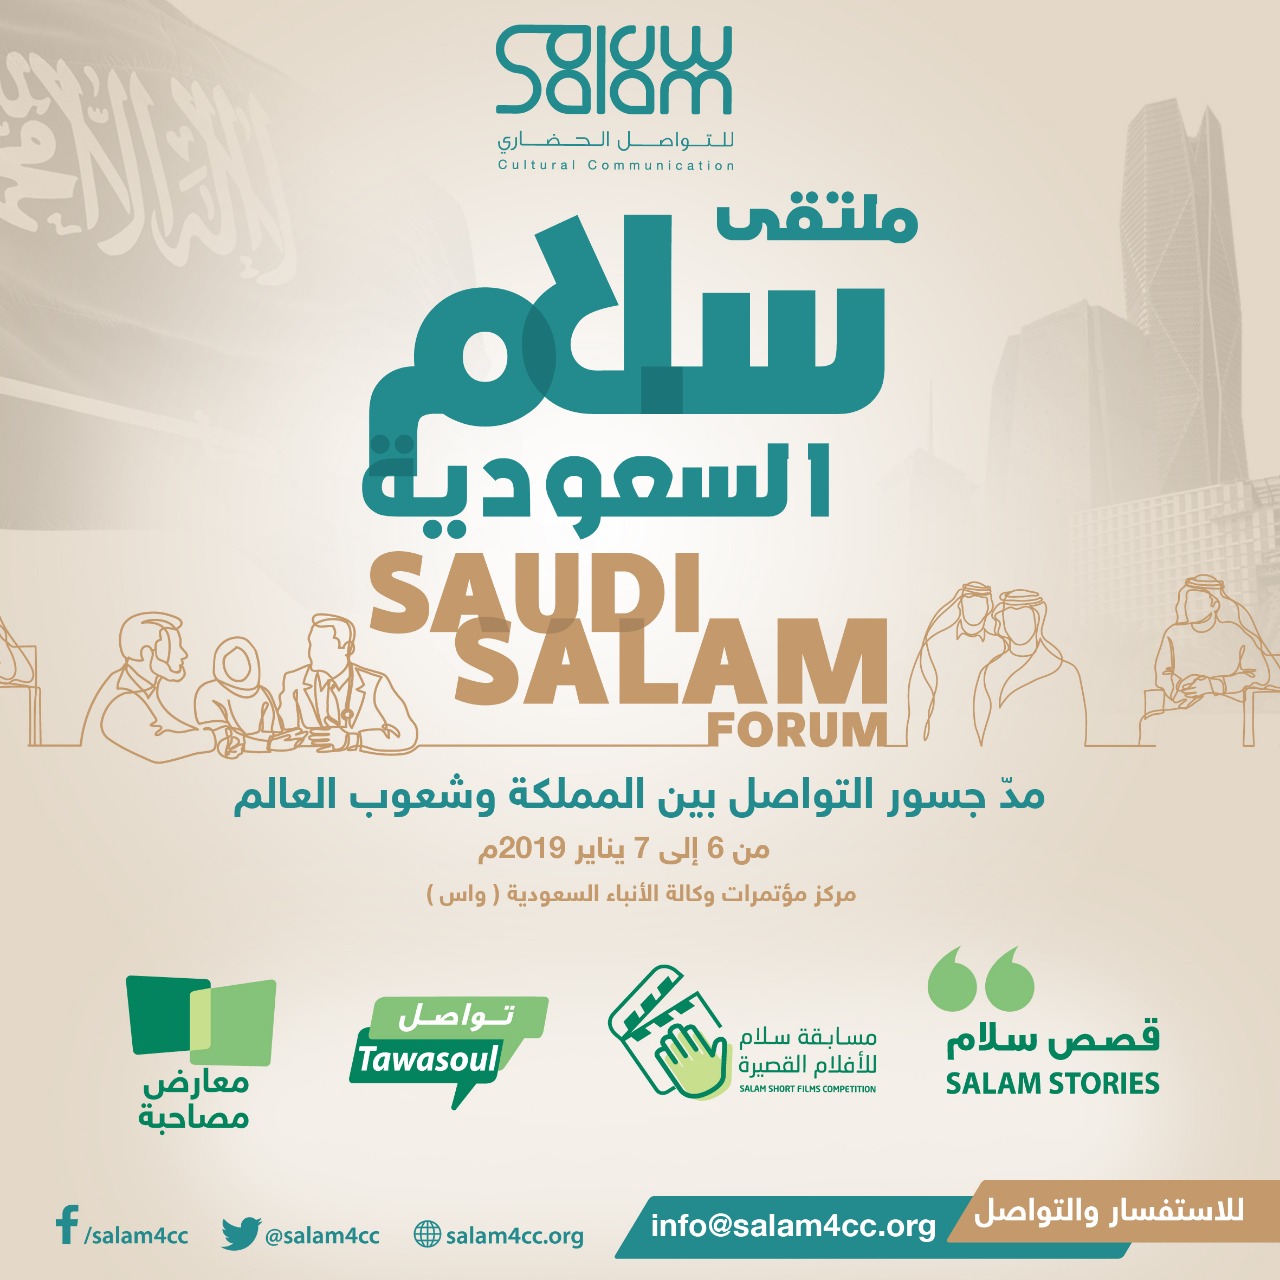 فعاليات لتعزيز ونشر الصورة الإيجابية للمملكة ضمن ملتقى سلام السعودية